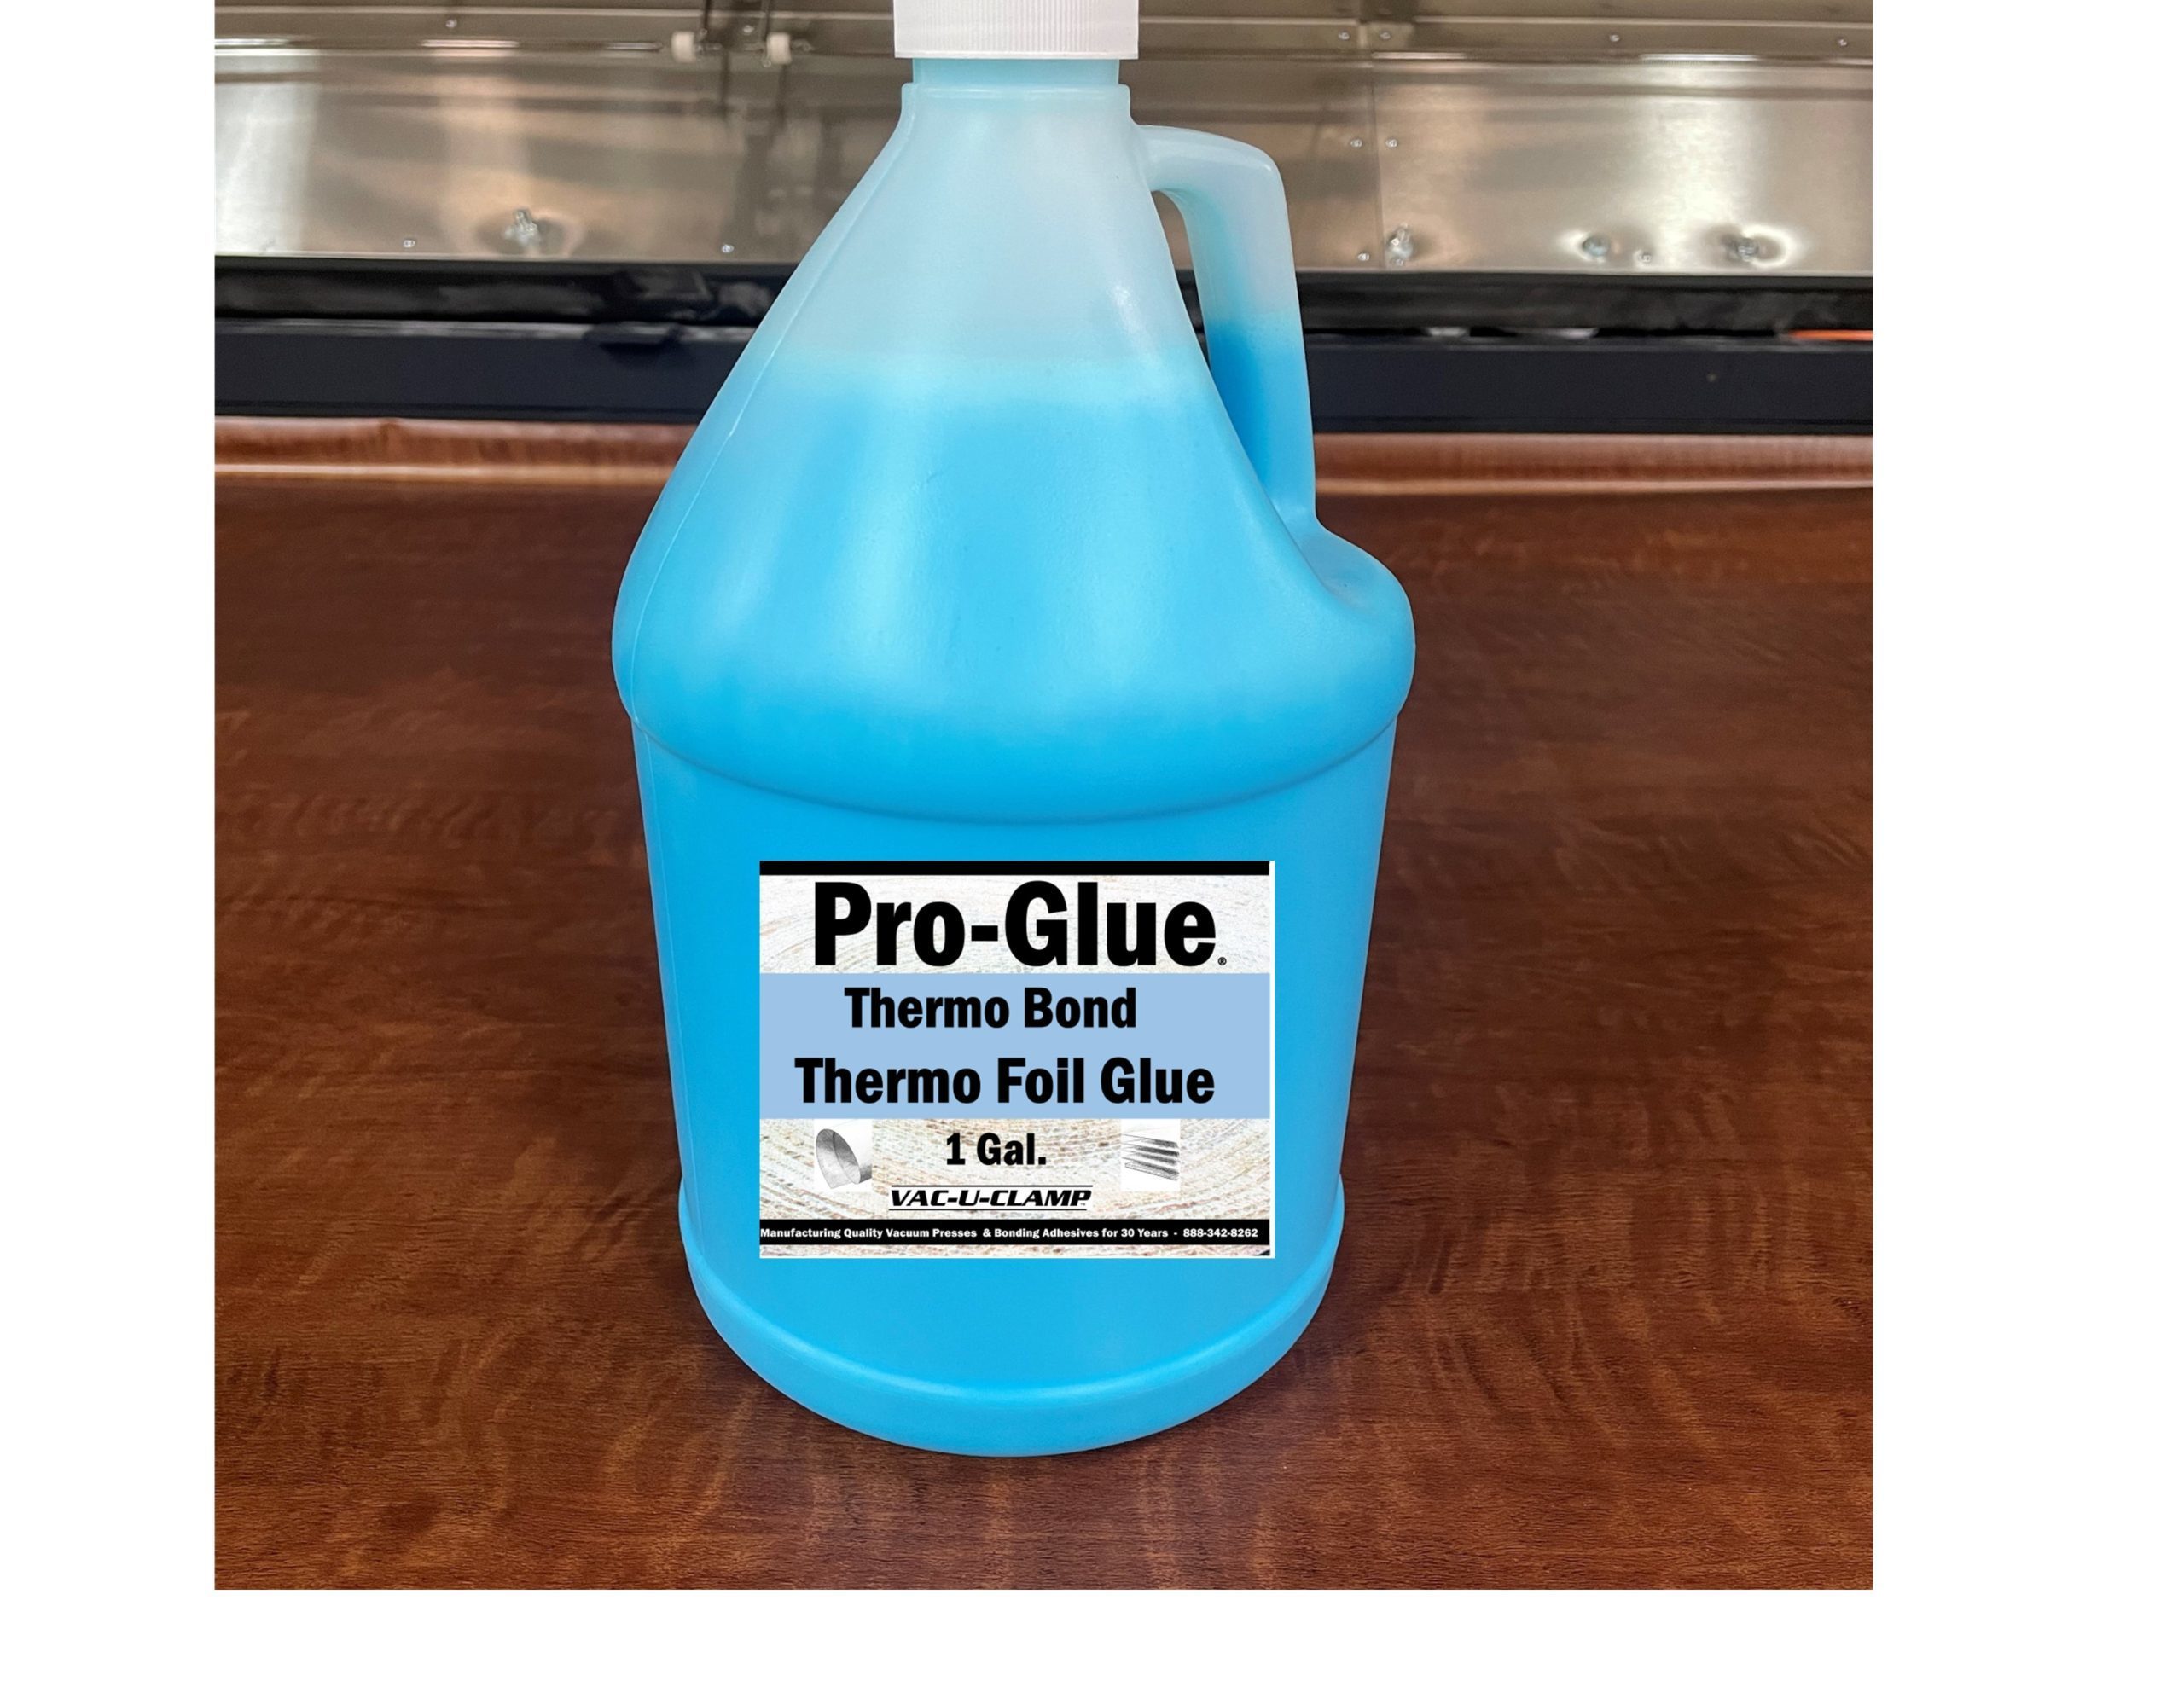 Glue-U Adhesives